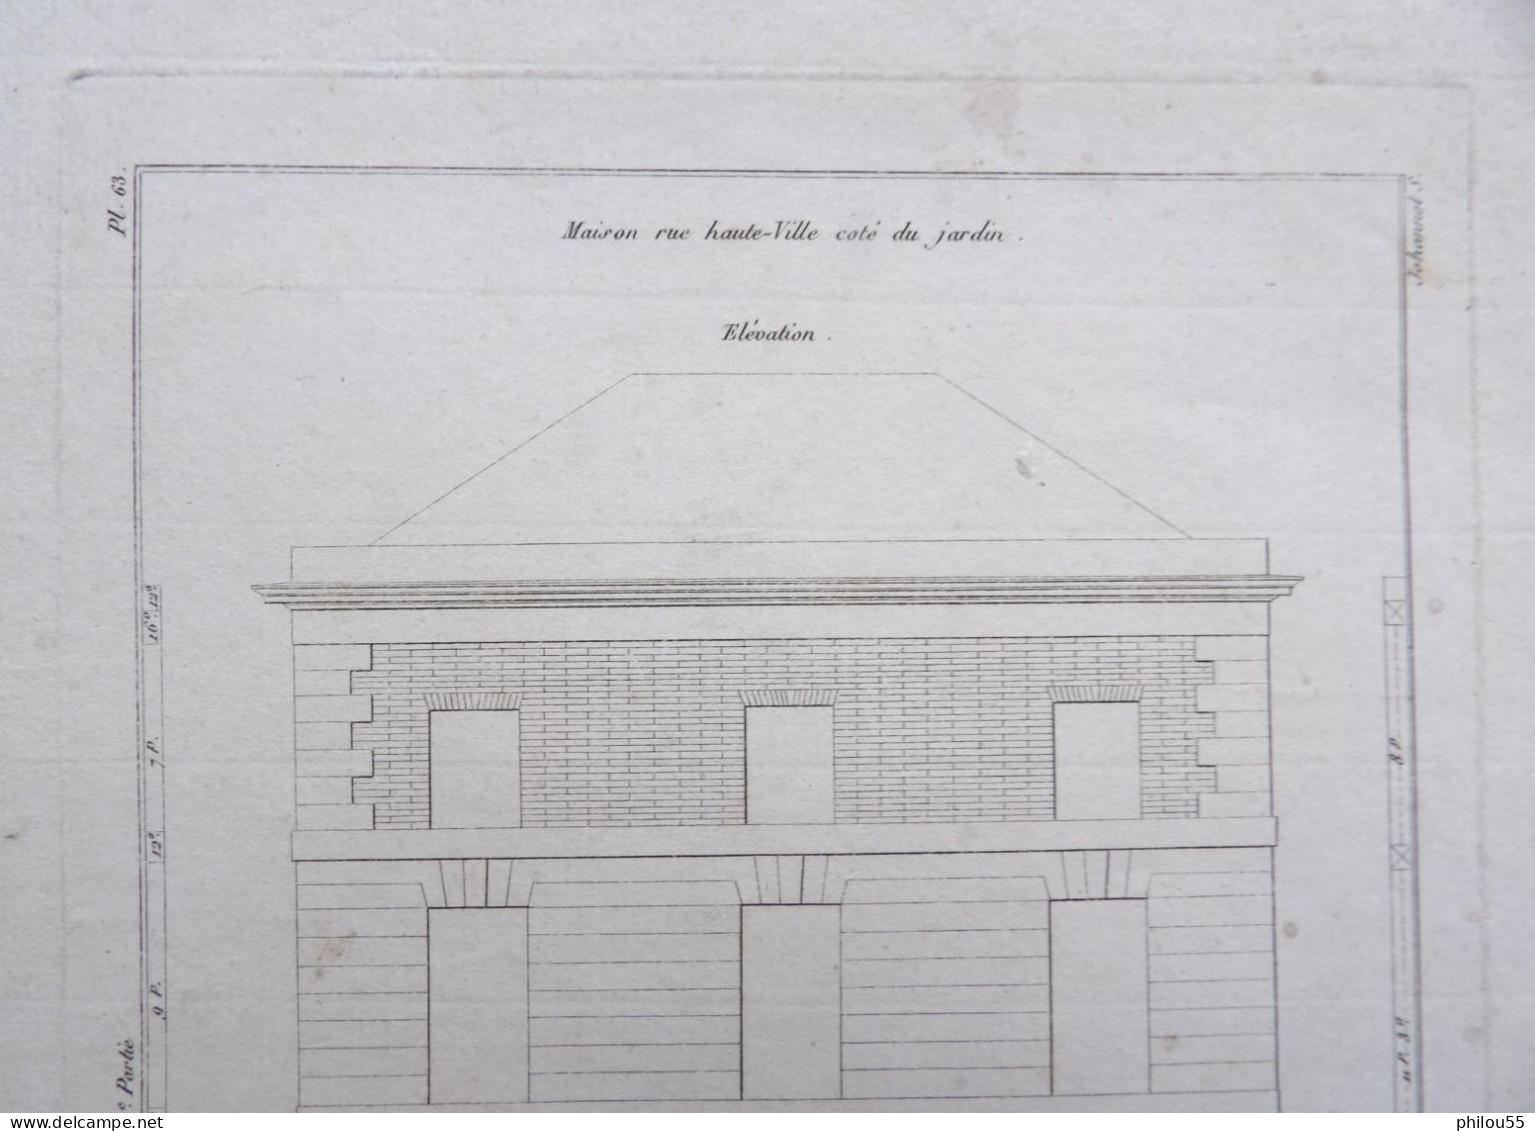 GRAVURE Krafft Del  19eme Plan Maison Rue Haute-Ville Cote Jardin - Architektur